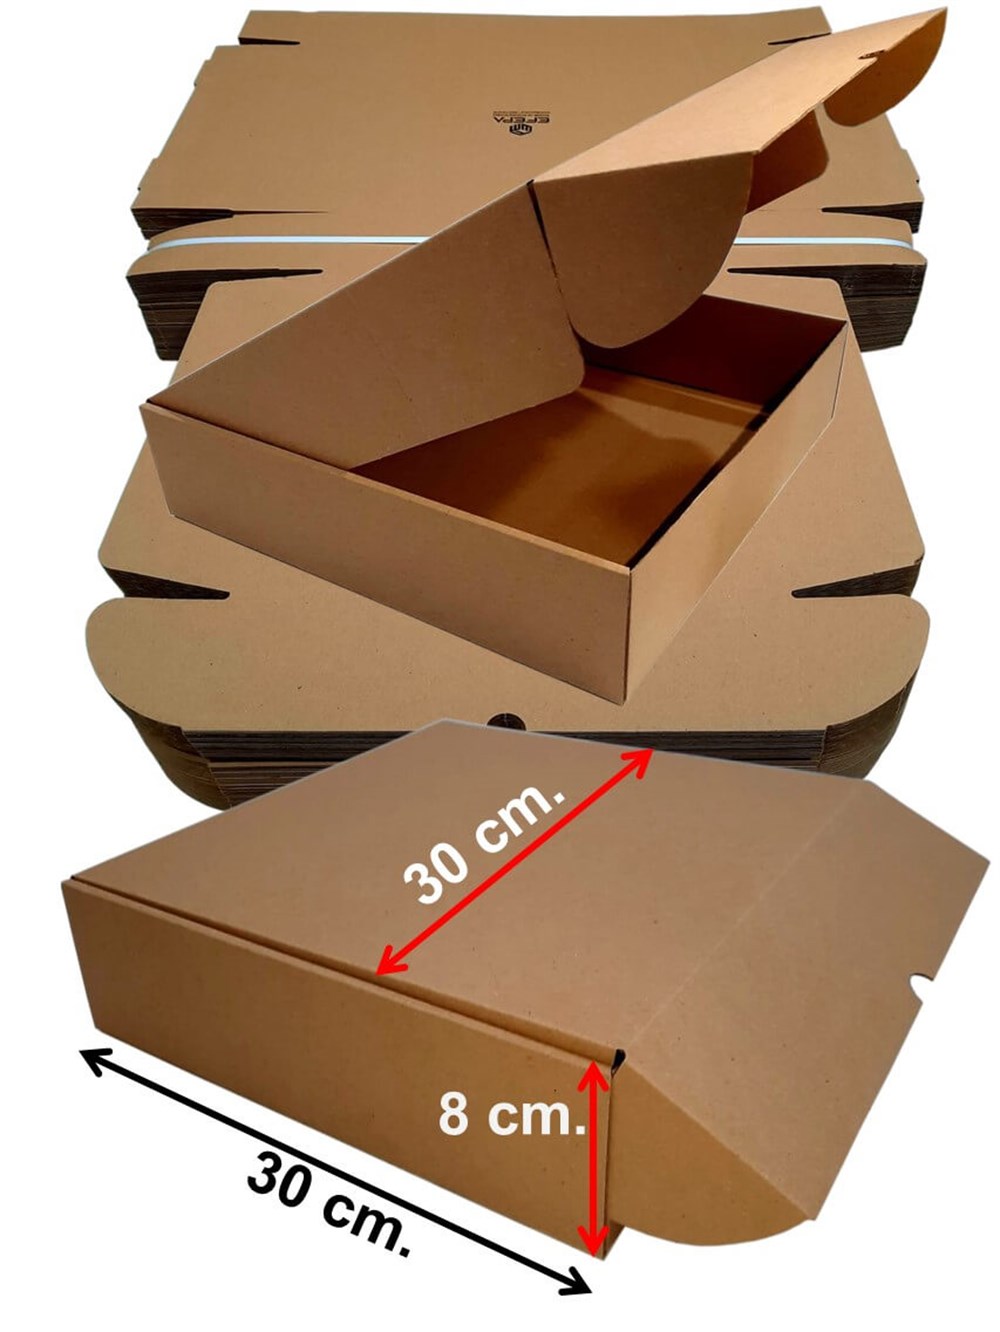 Tst Karton Kutu Baskısız 30x30x8 cm 50'li | Efepa Temizlik ve Ambalaj  Ürünleri